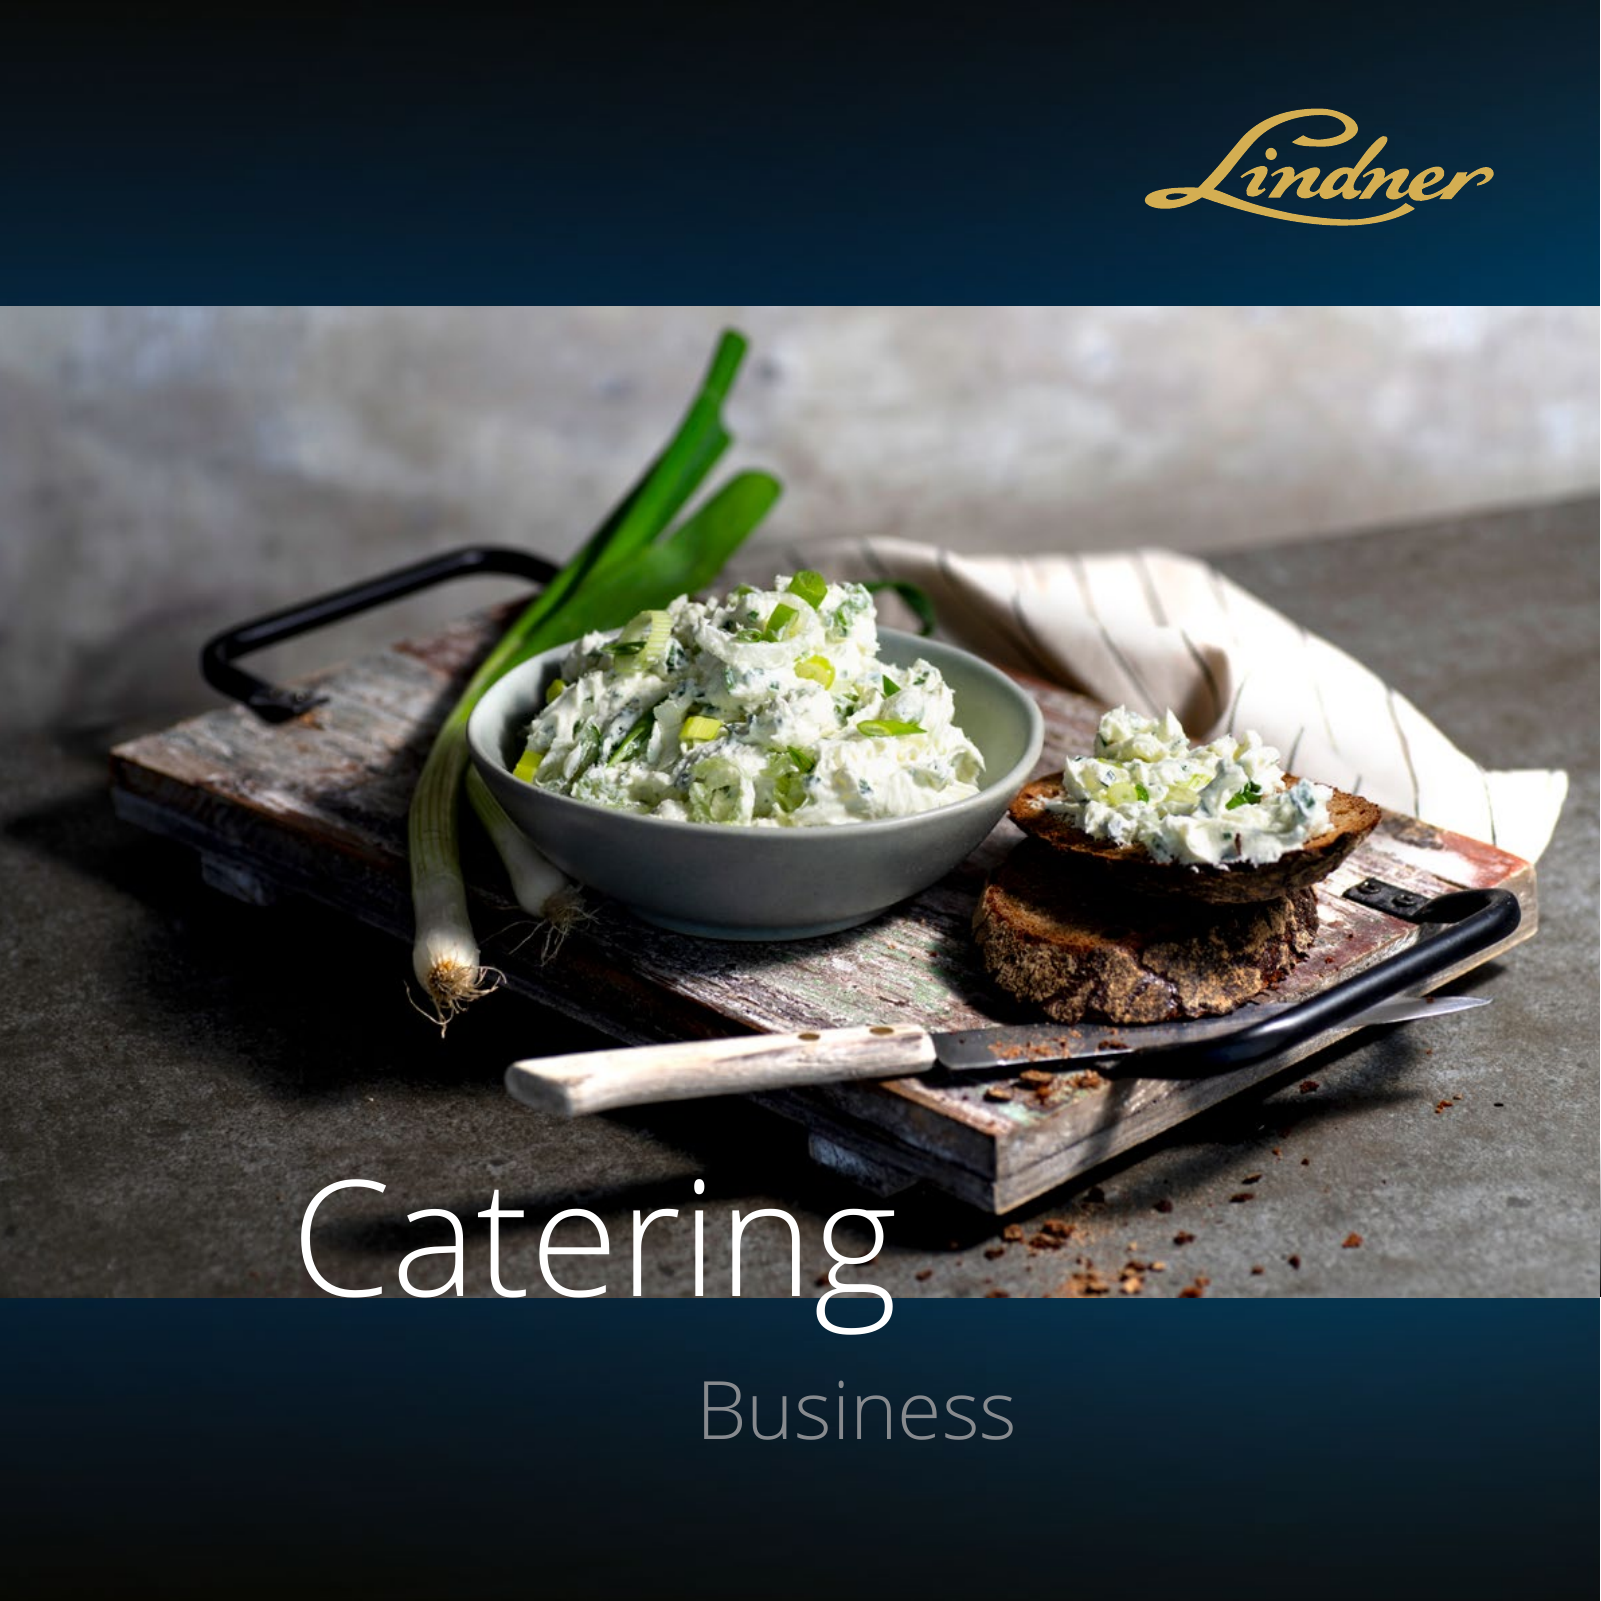 Vorschau Catering Katalog 2022 - Business Seite 1